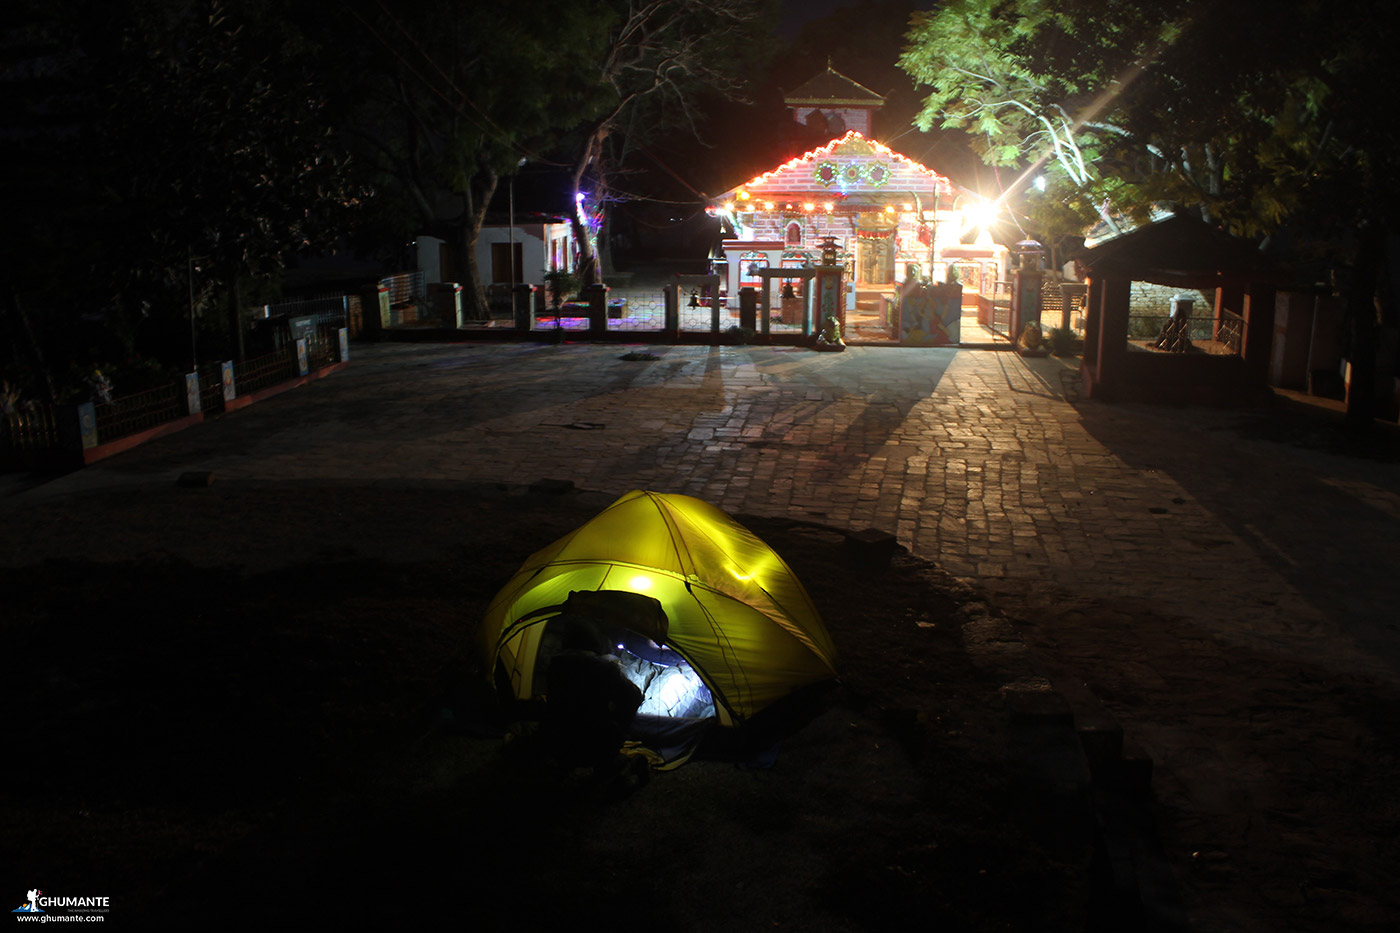 Camping in Siligudi